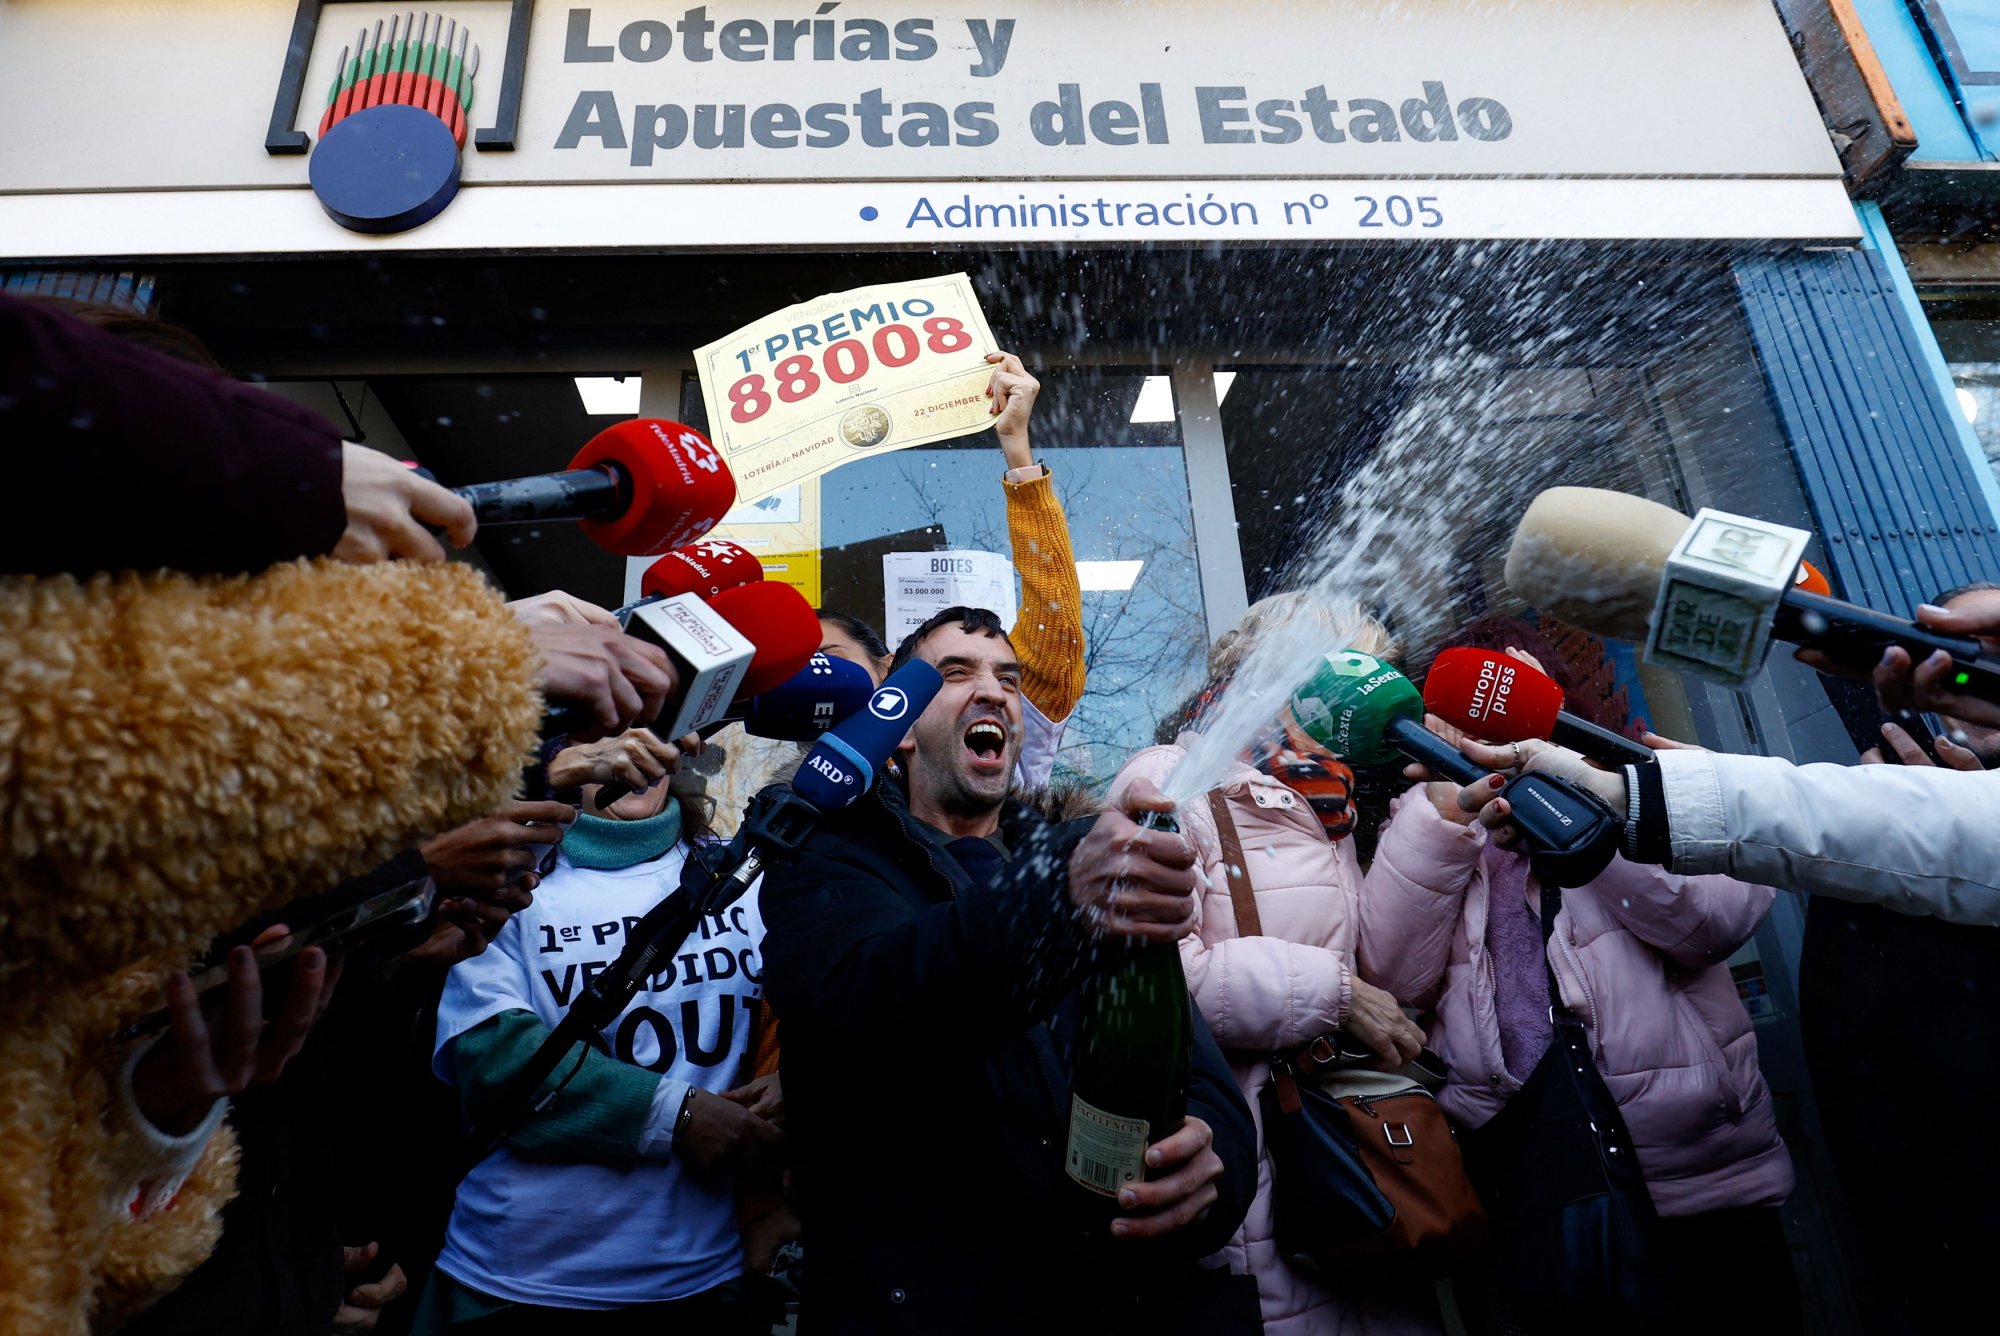 Ισπανία: Η μεγαλύτερη λοταρία του κόσμου μοιράζει 2,6 δισ. ευρώ – Τι είναι το «El Gordo»